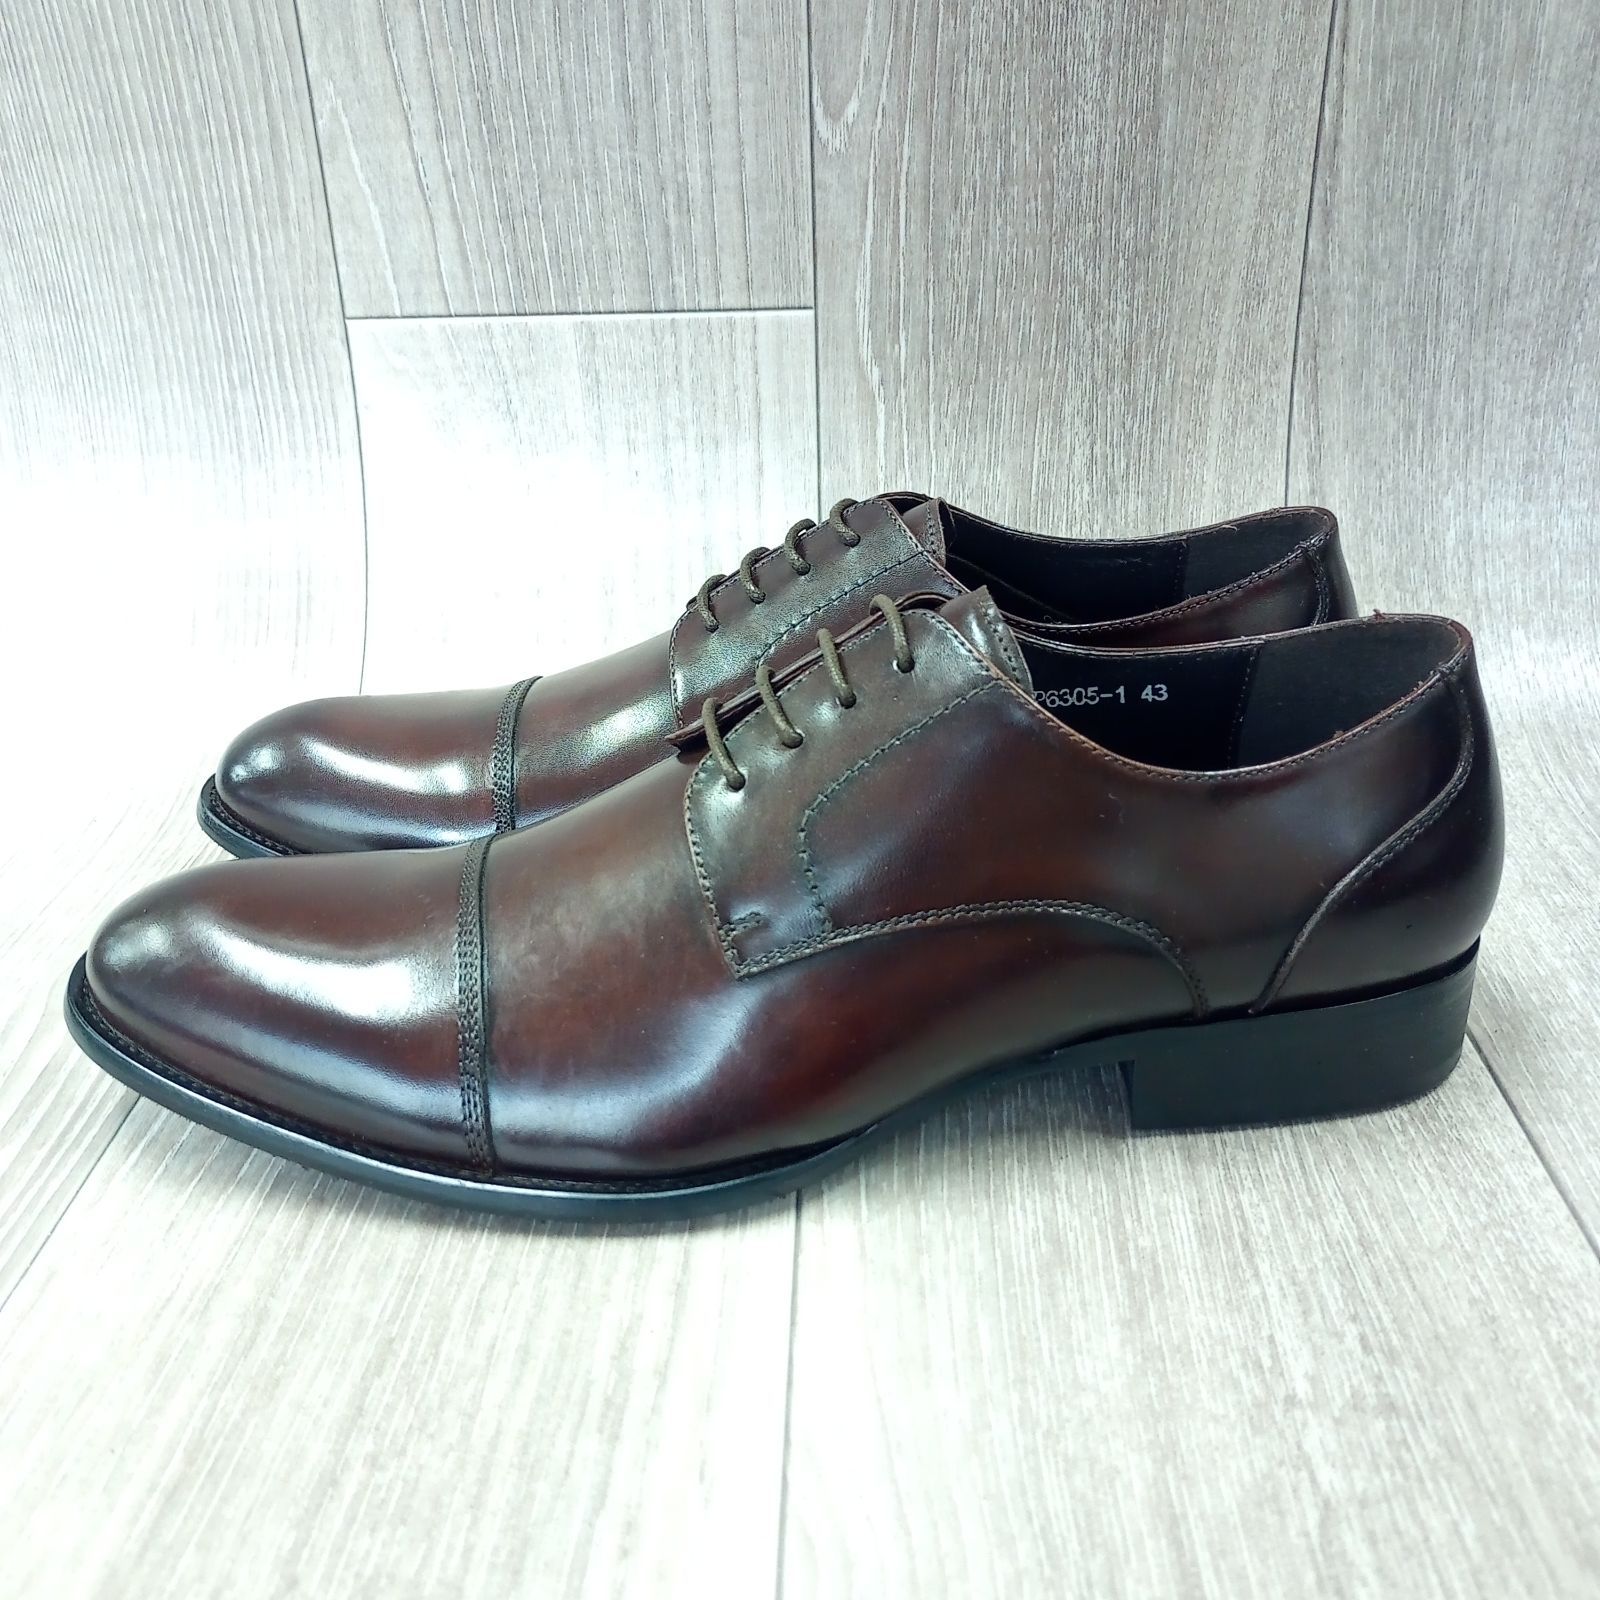 【1サイズ限定】本革ビジネスシューズ サイズ43 ストレートチップ 革靴 紳士靴 - メルカリShops